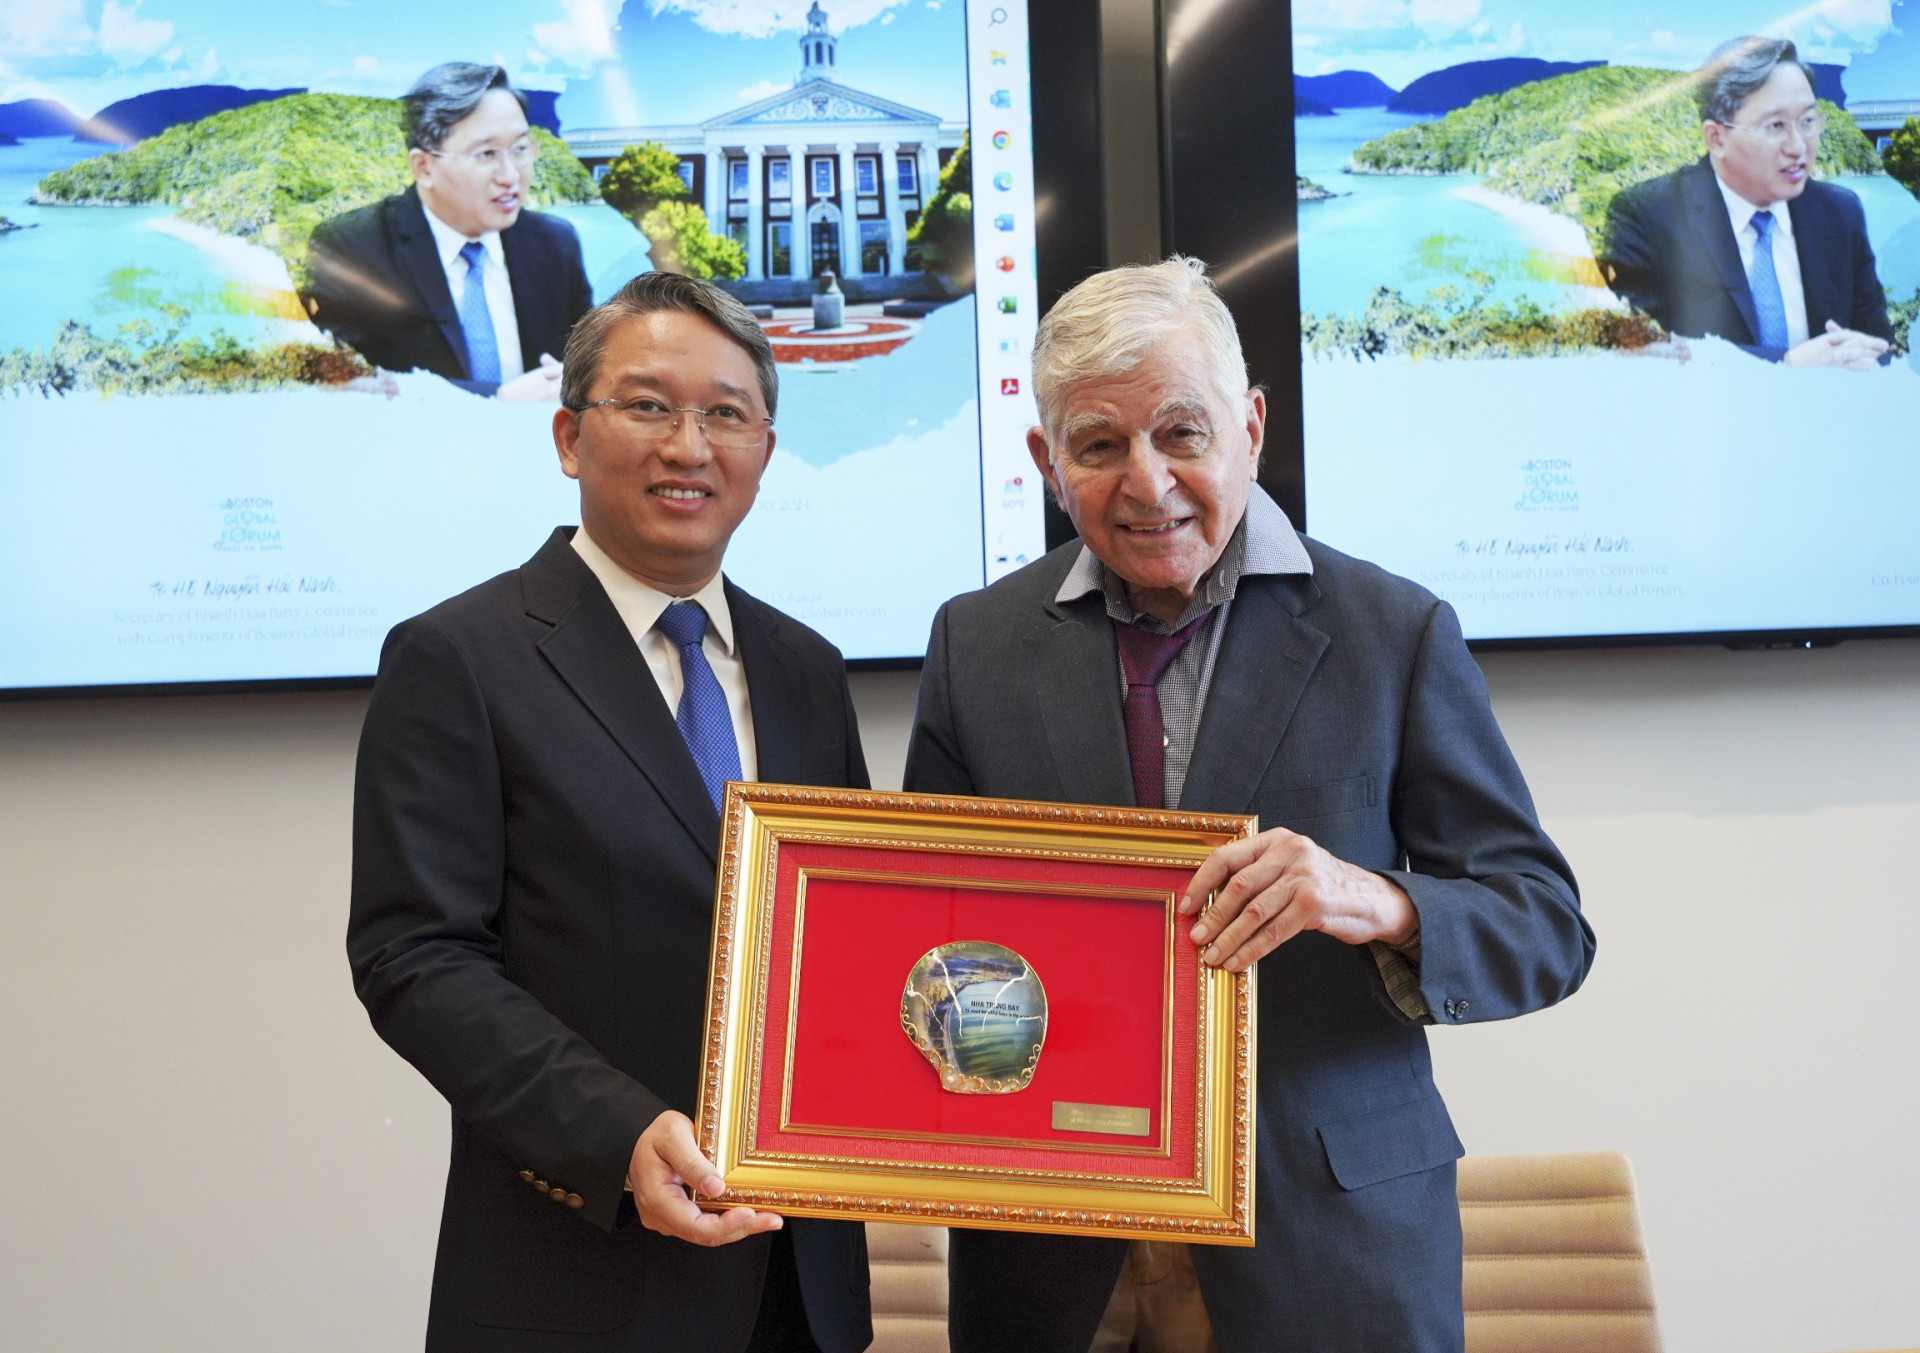 Bí thư Tỉnh ủy Nguyễn Hải Ninh tặng quà lưu niệm cho Nguyên Thống đốc Michael Dukakis - đồng sáng lập và Chủ tịch Diễn đàn Toàn cầu Boston.  